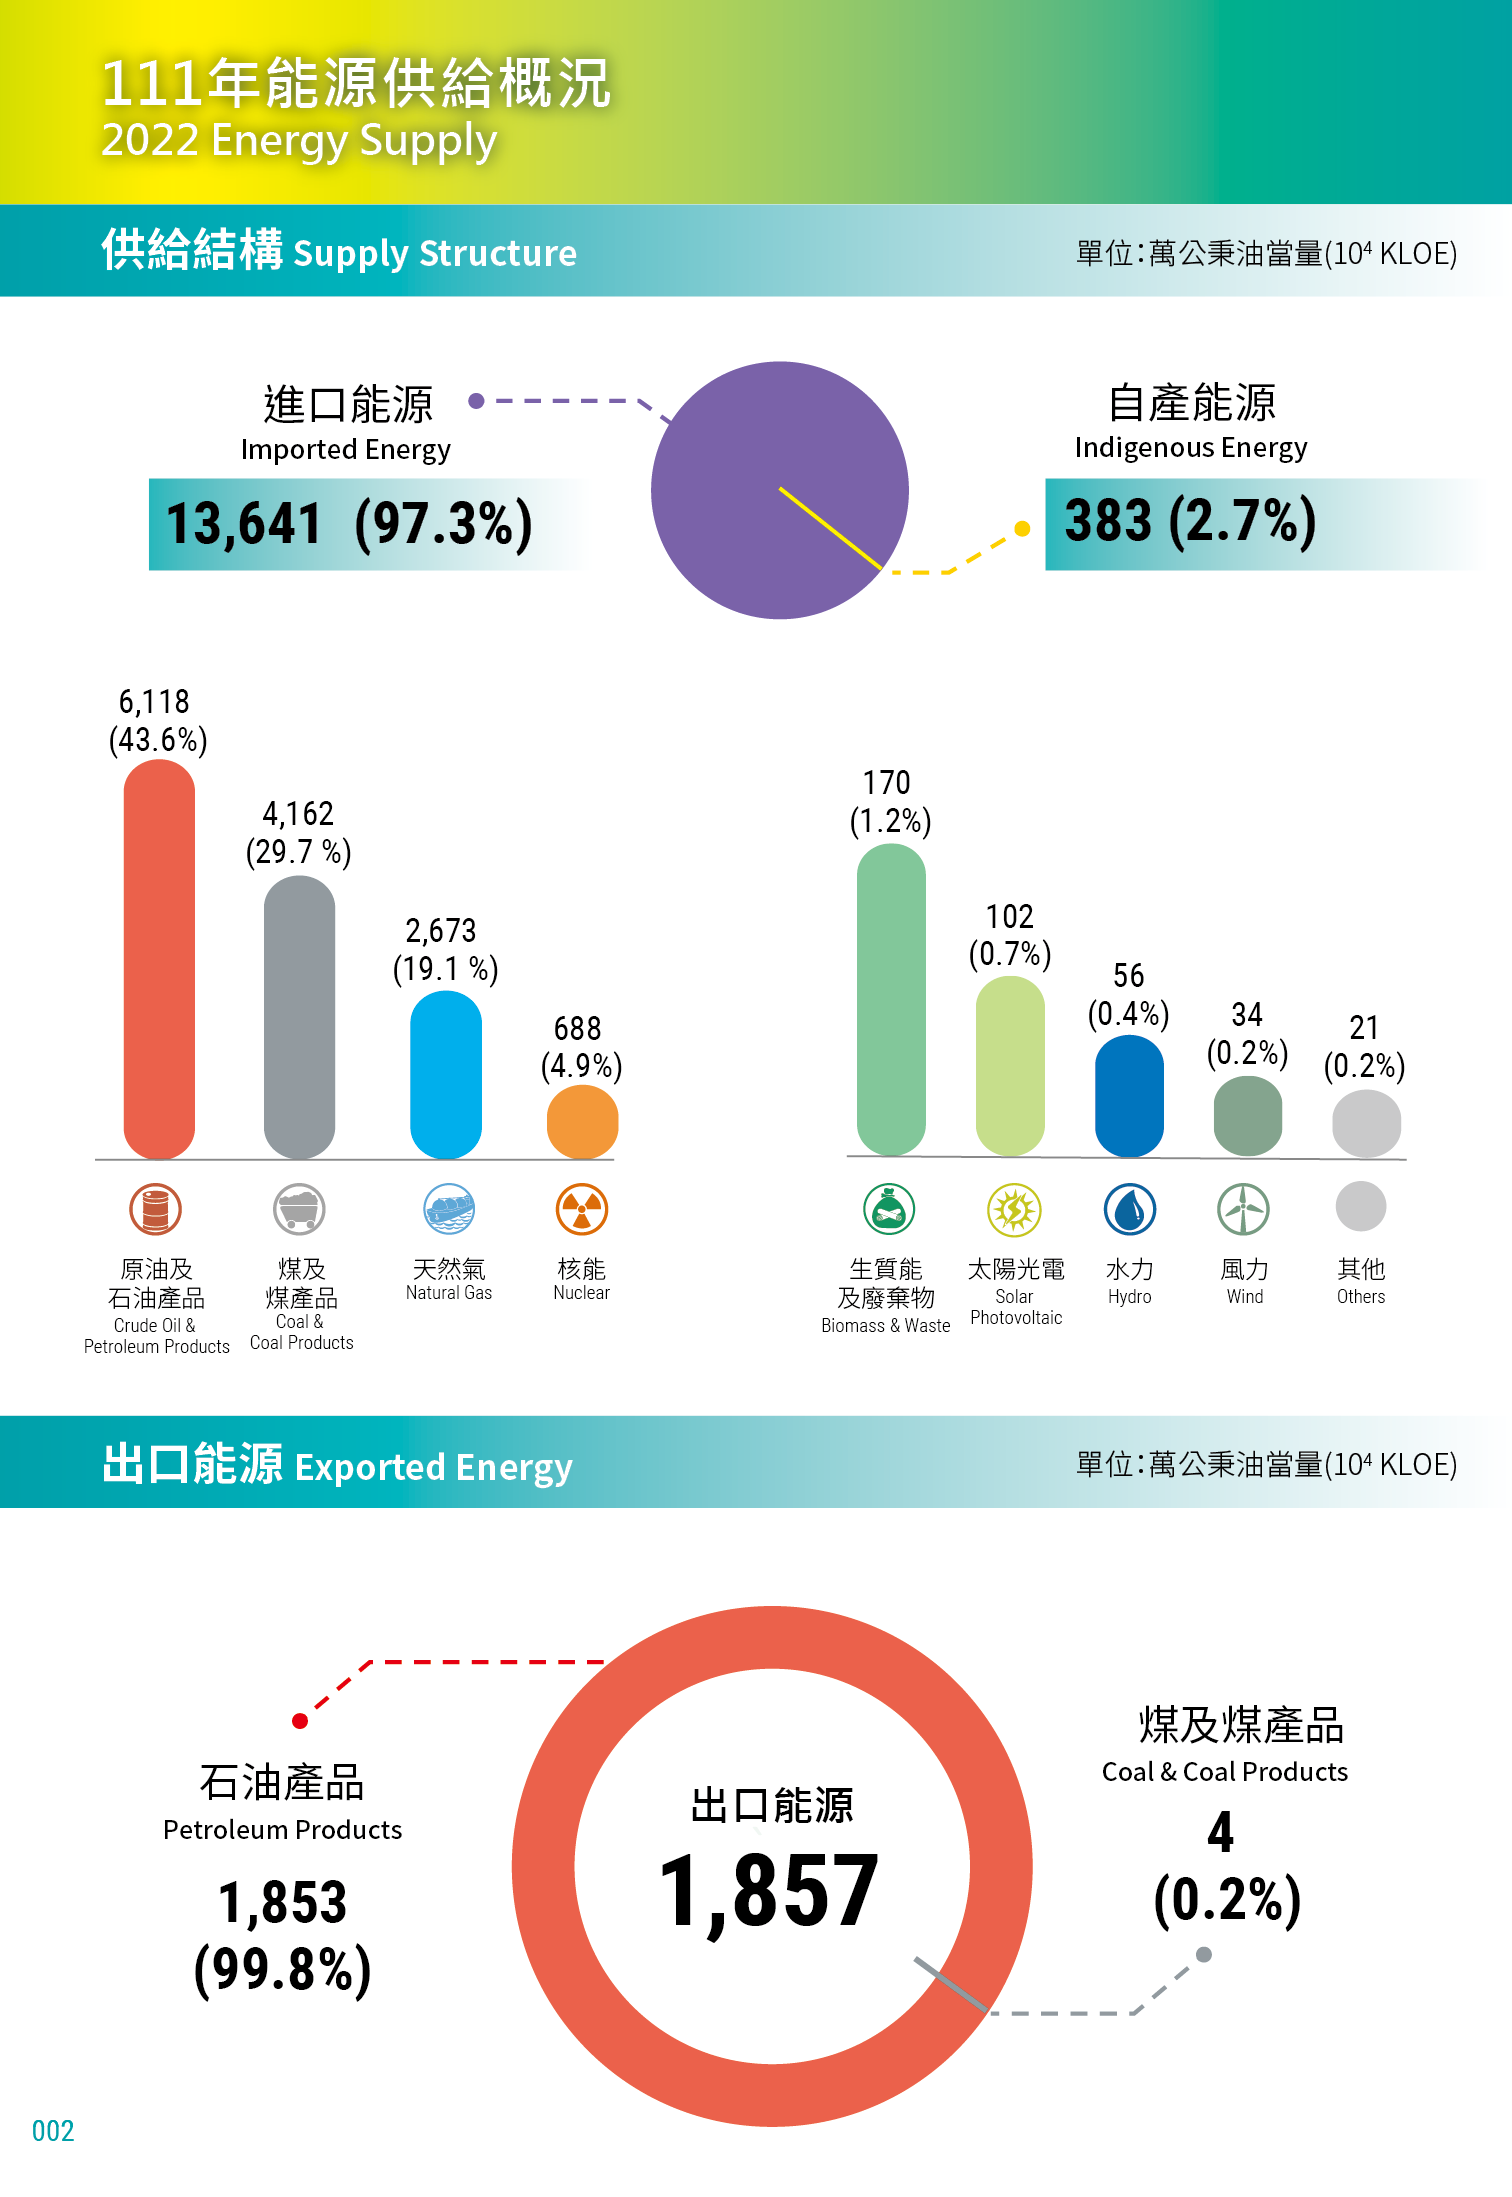 111年能源供給概況：進口能源佔97.3%，自產能源佔2.7%；出口能源中石油產品佔99.8%，煤與煤產品佔0.2%。